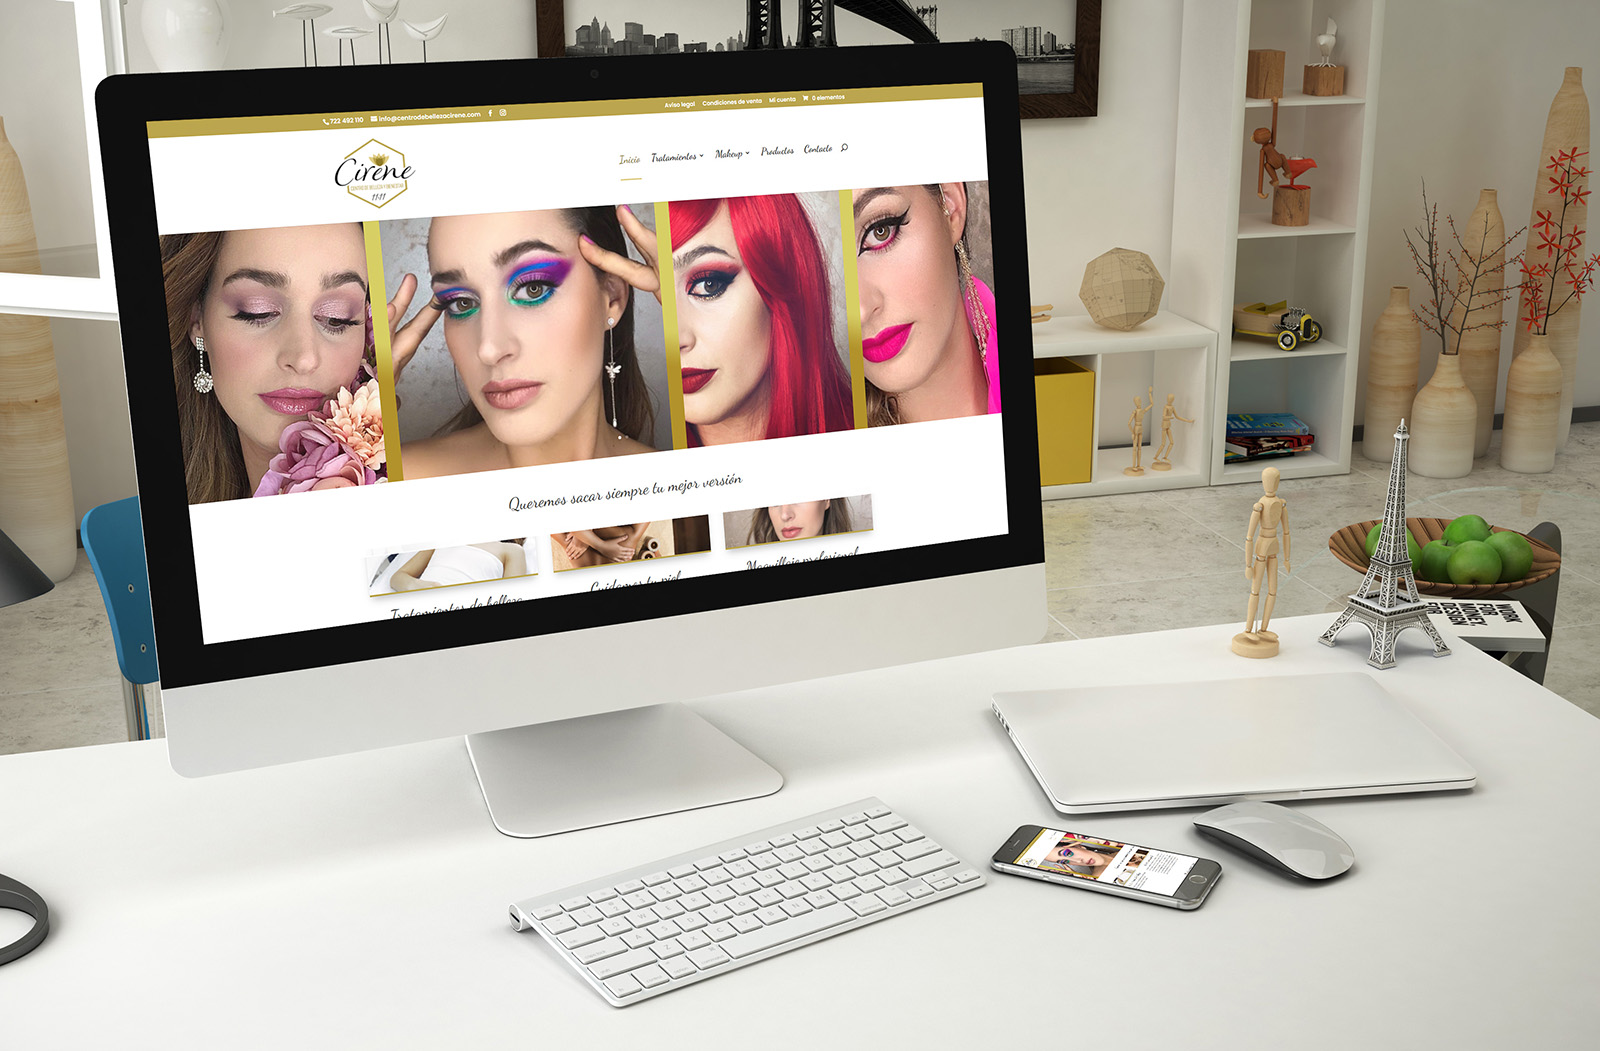 Centro de Belleza Cirene, diseño web de Logocrea®